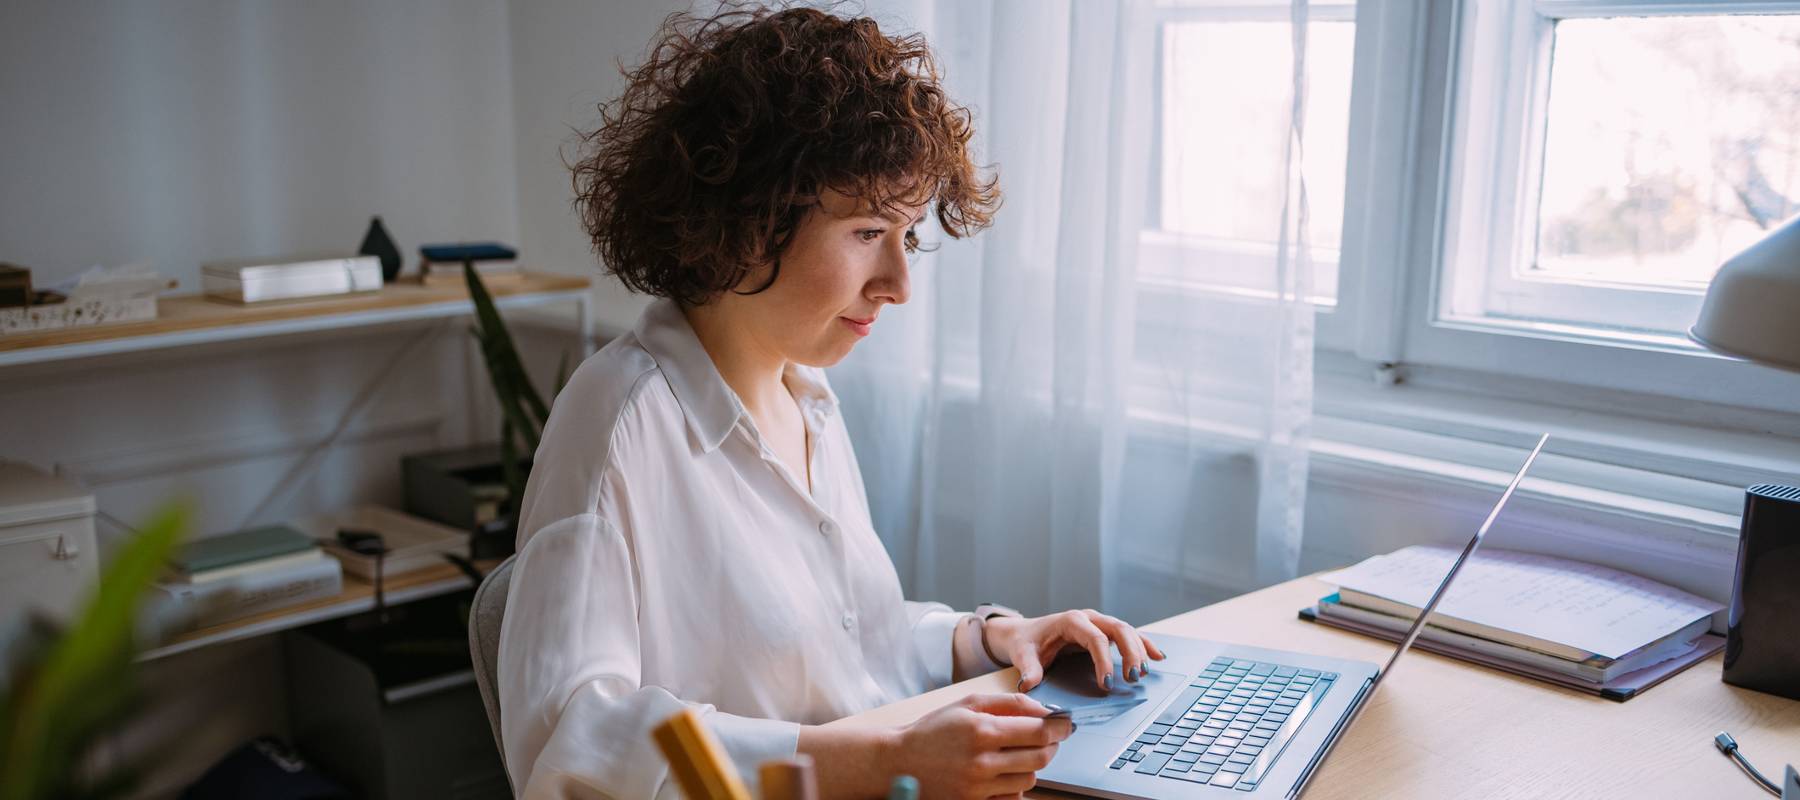 Woman sitting at computer, looking at screen